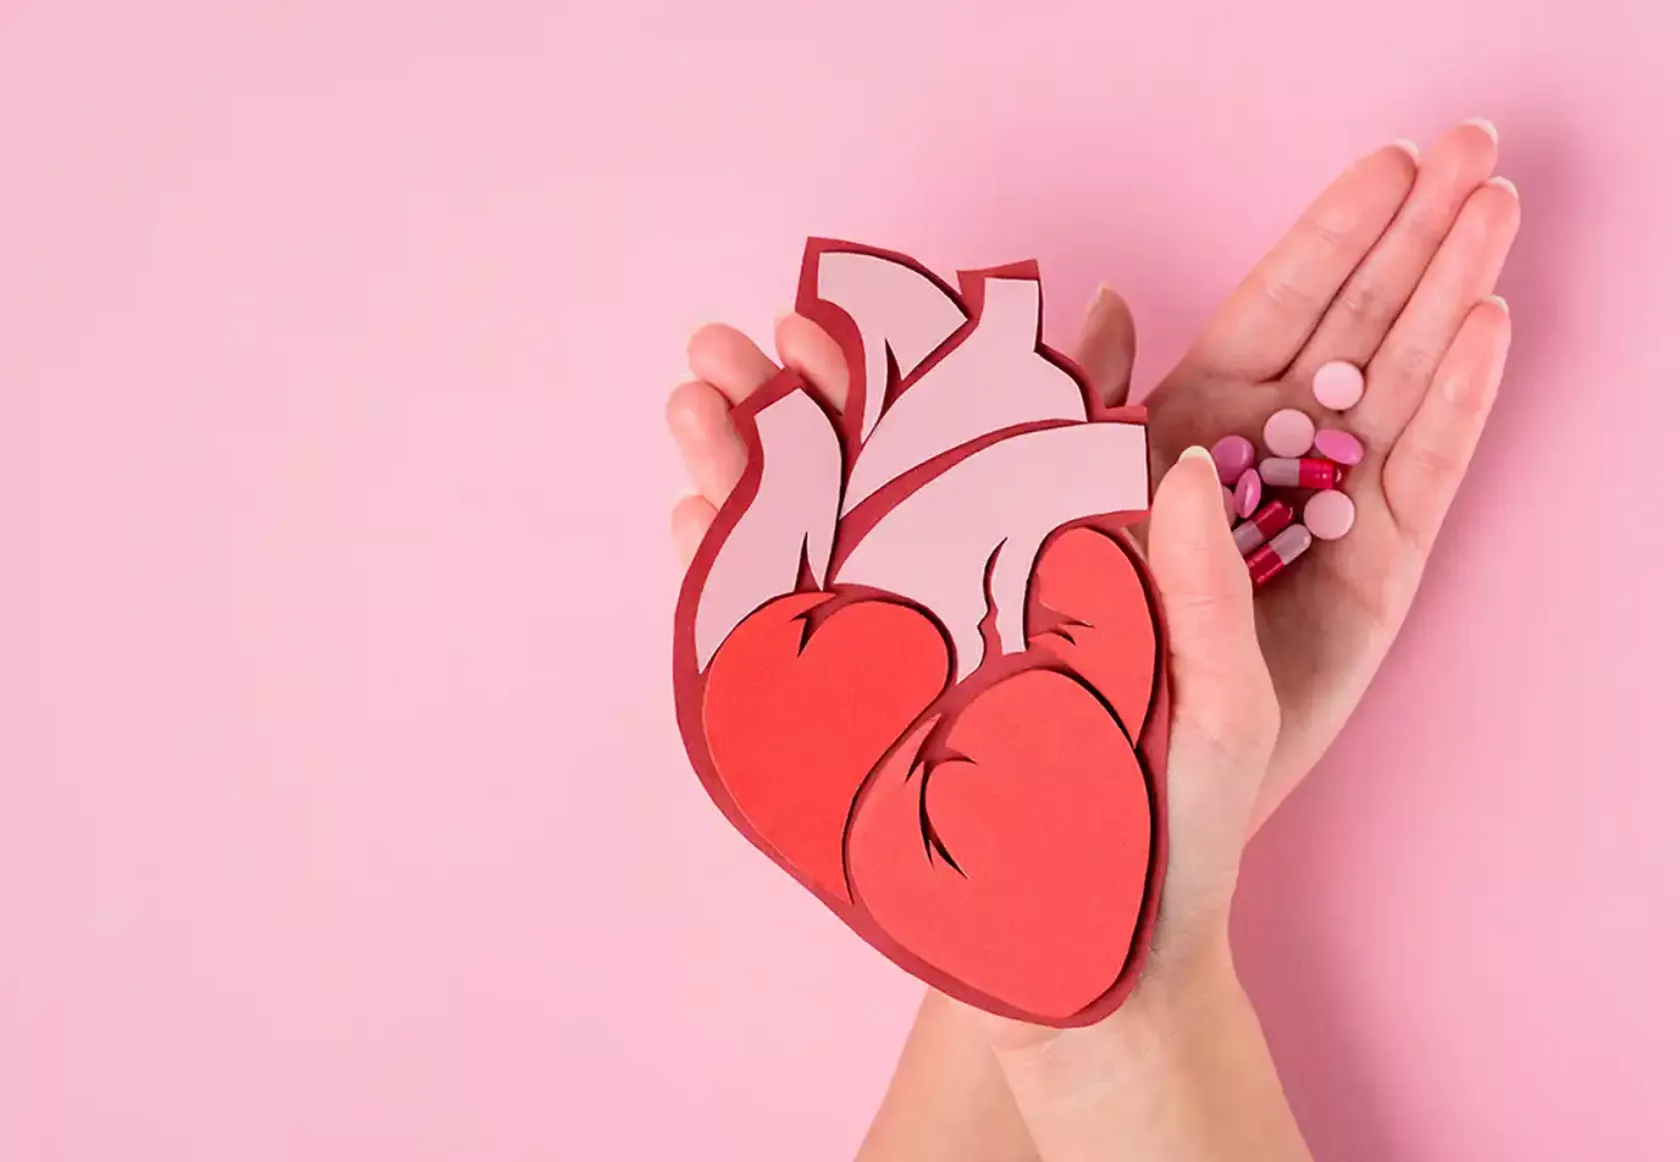 Zwei Hände halten ein Modell eines Herzens und Kapseln mit Nahrungsergänzungsmitteln.